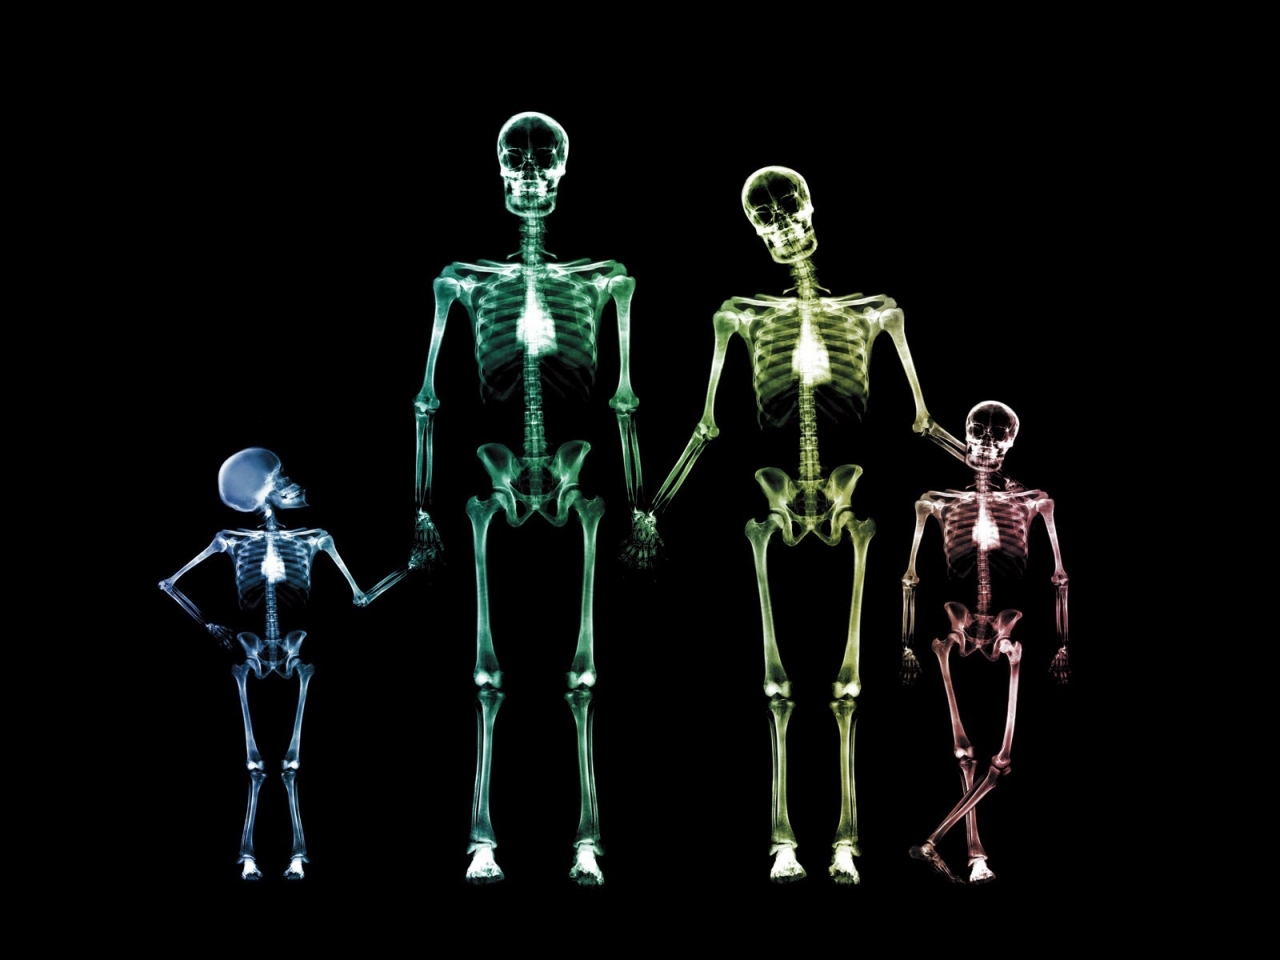 Family Skeletons for 1280 x 960 resolution